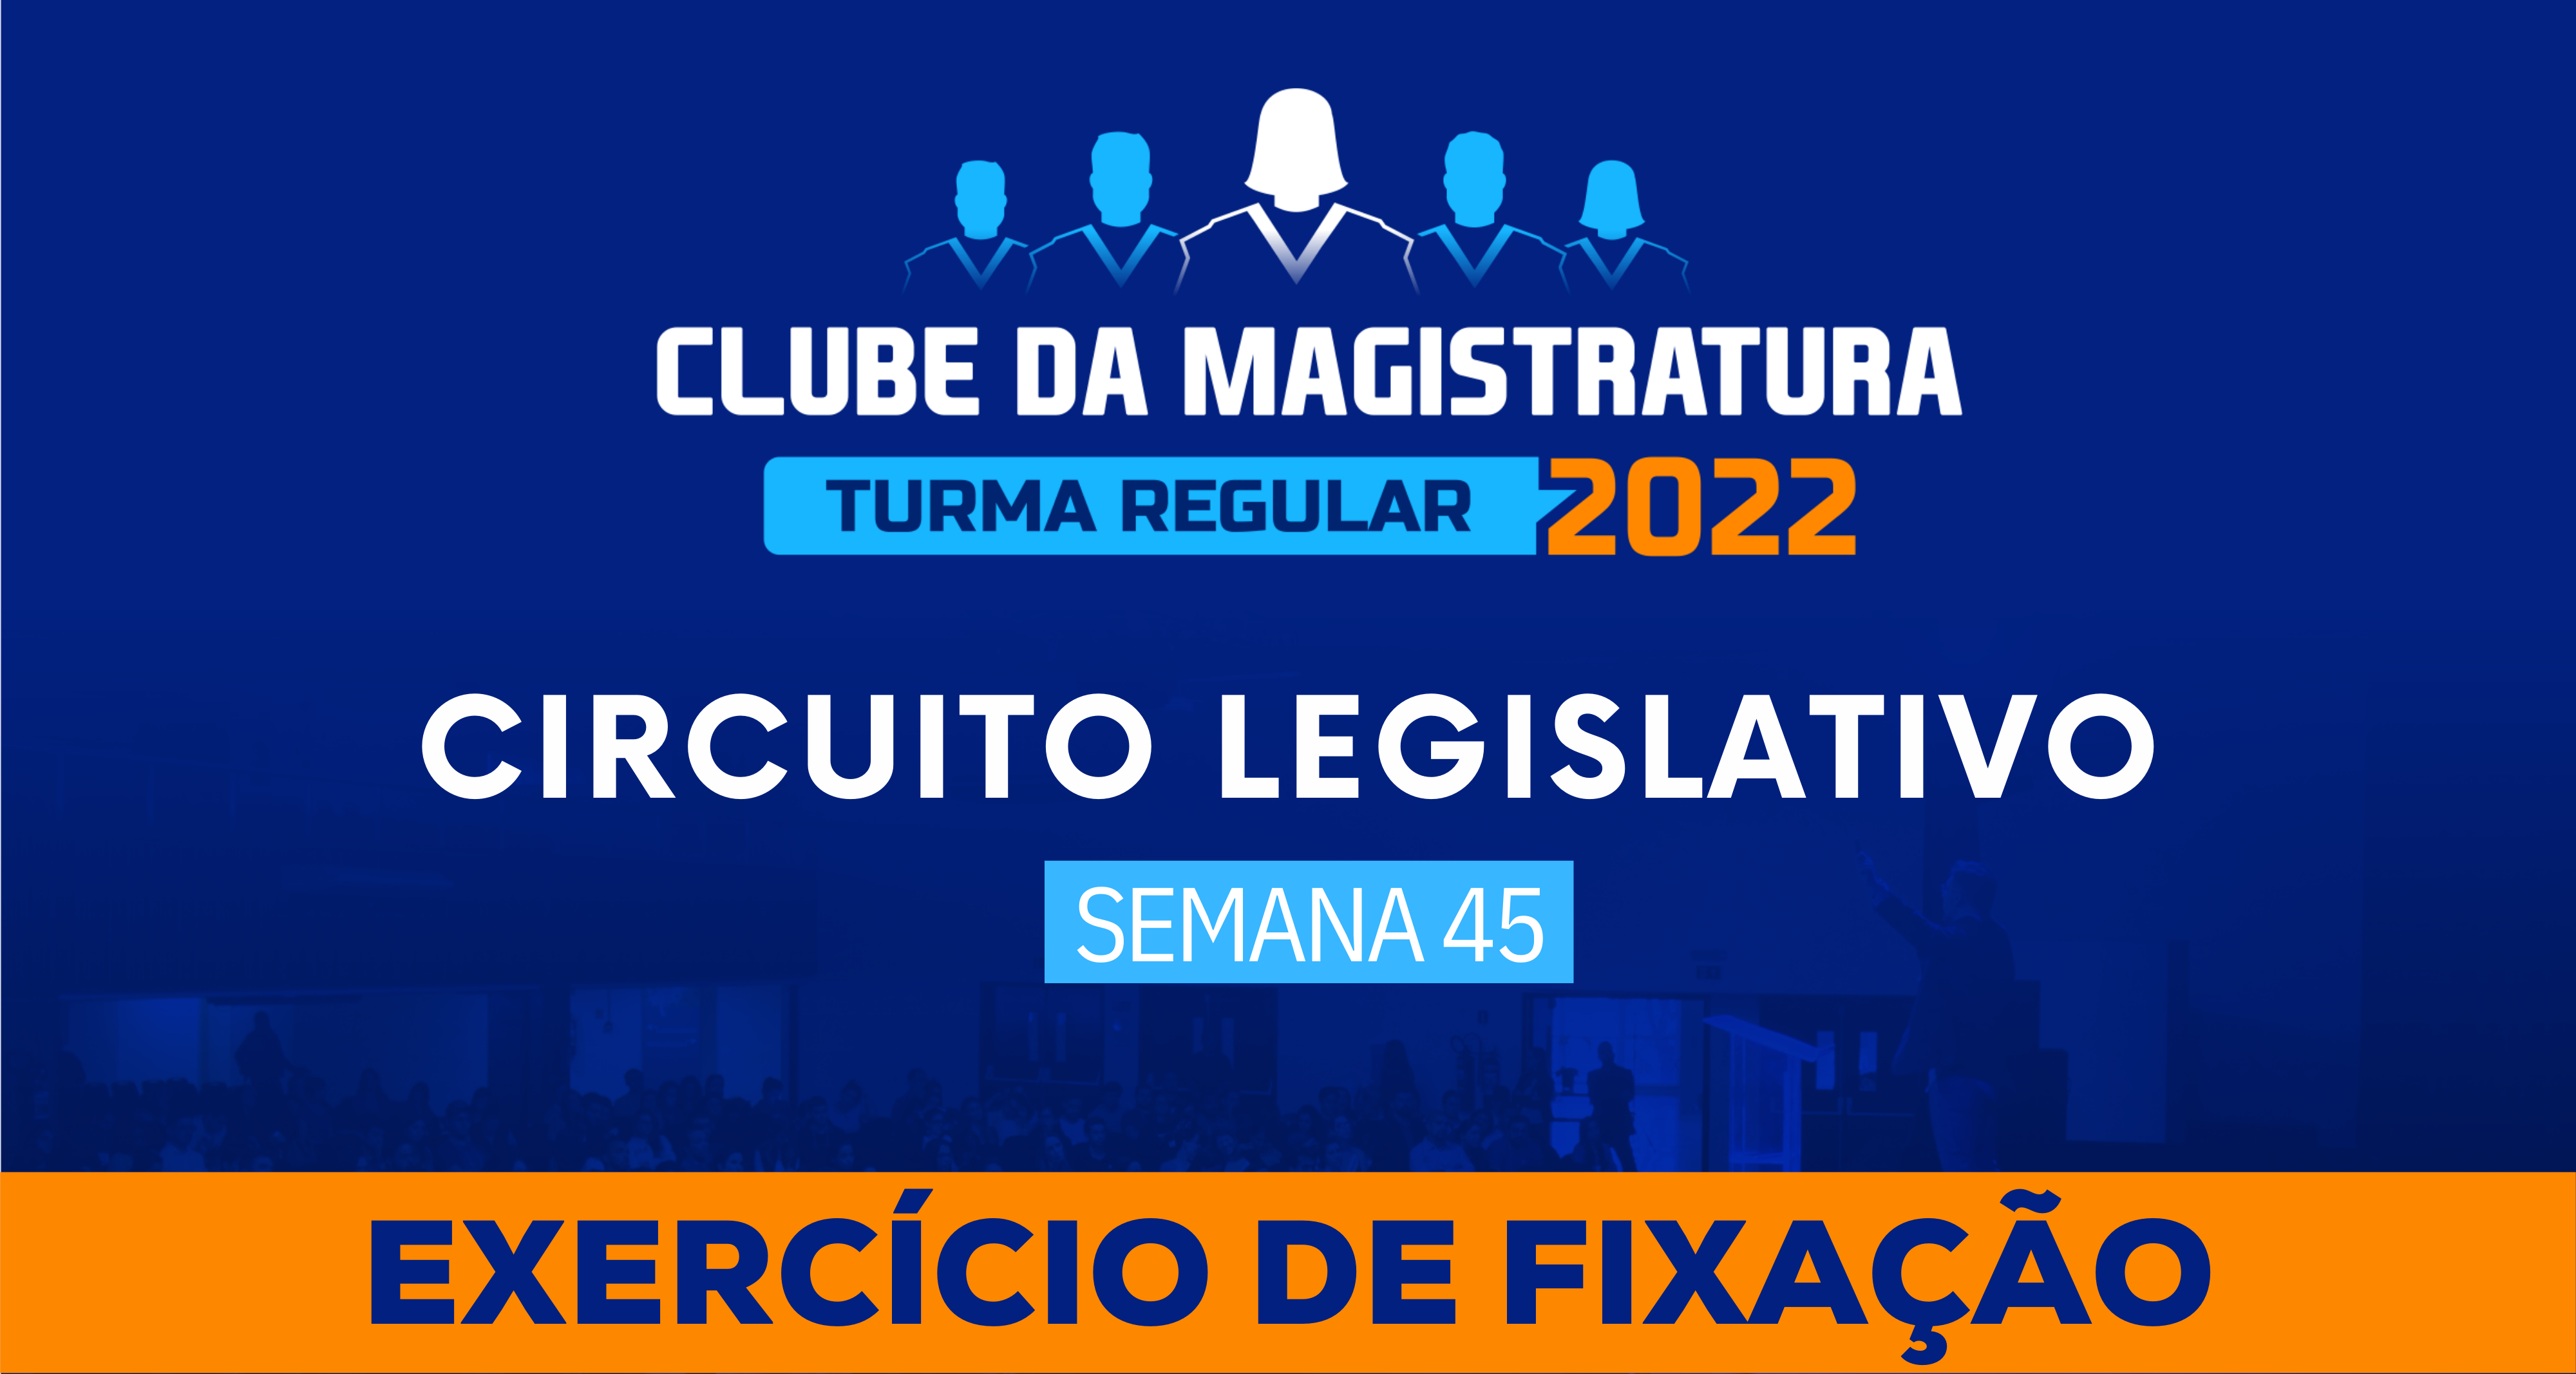 Circuito Legislativo 2022.1 (Clube da Magistratura - Semana 45)